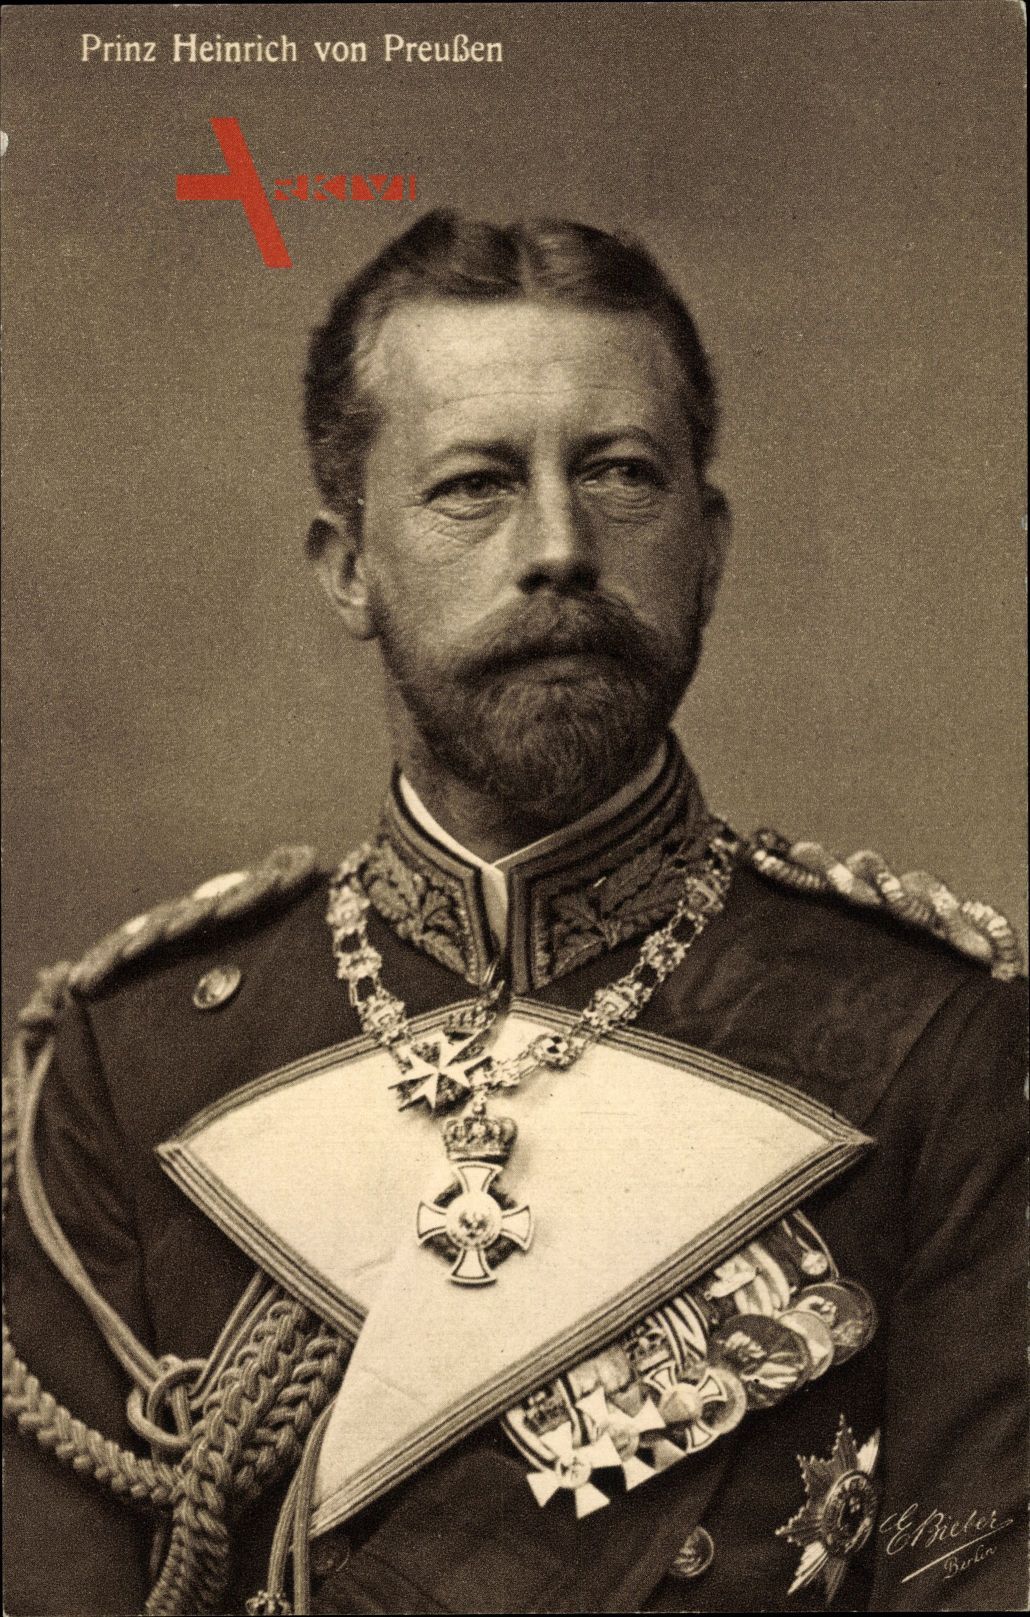 Prinz Heinrich von Preußen in Uniform, Admiral, Orden